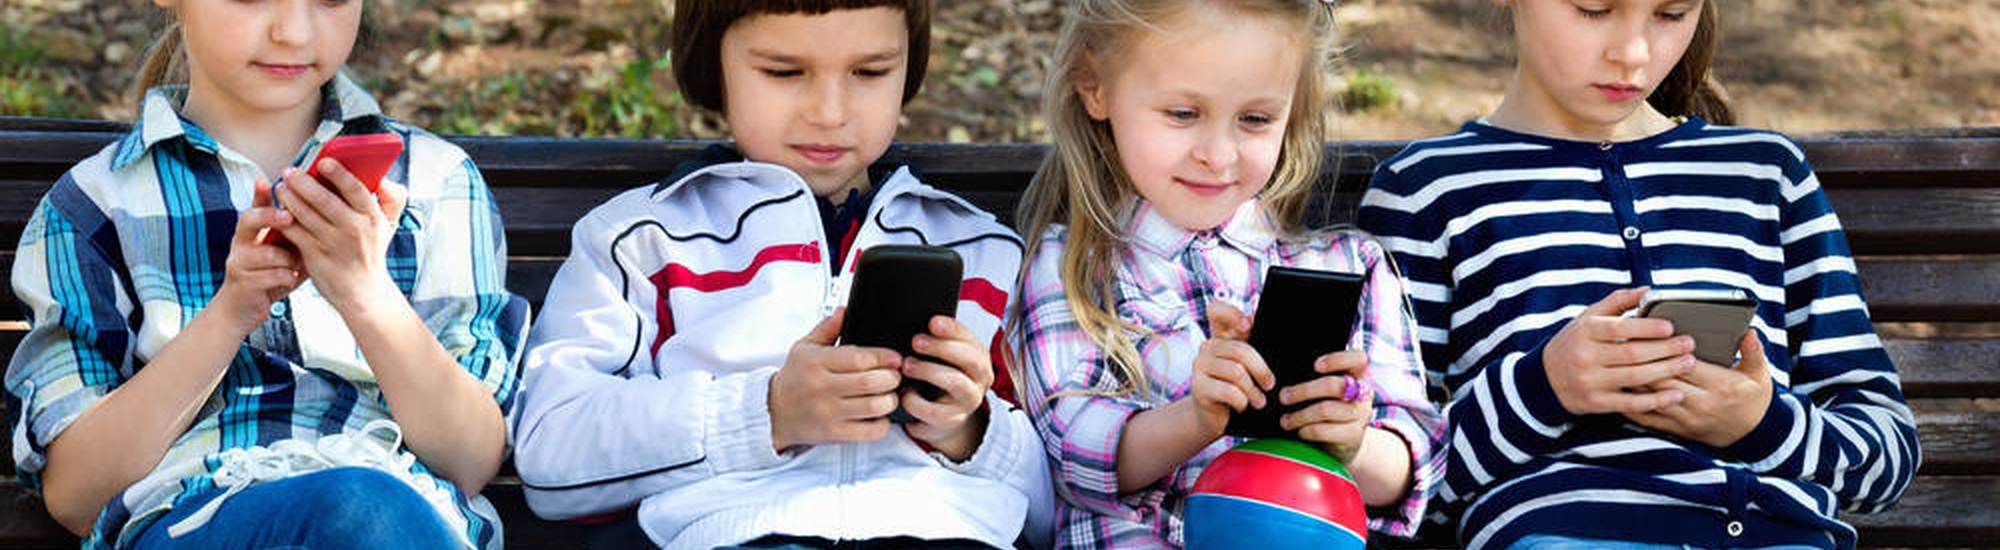 Ventajas y perjuicios de juguetes y/o dispositivos electrónicos por parte del público infantil